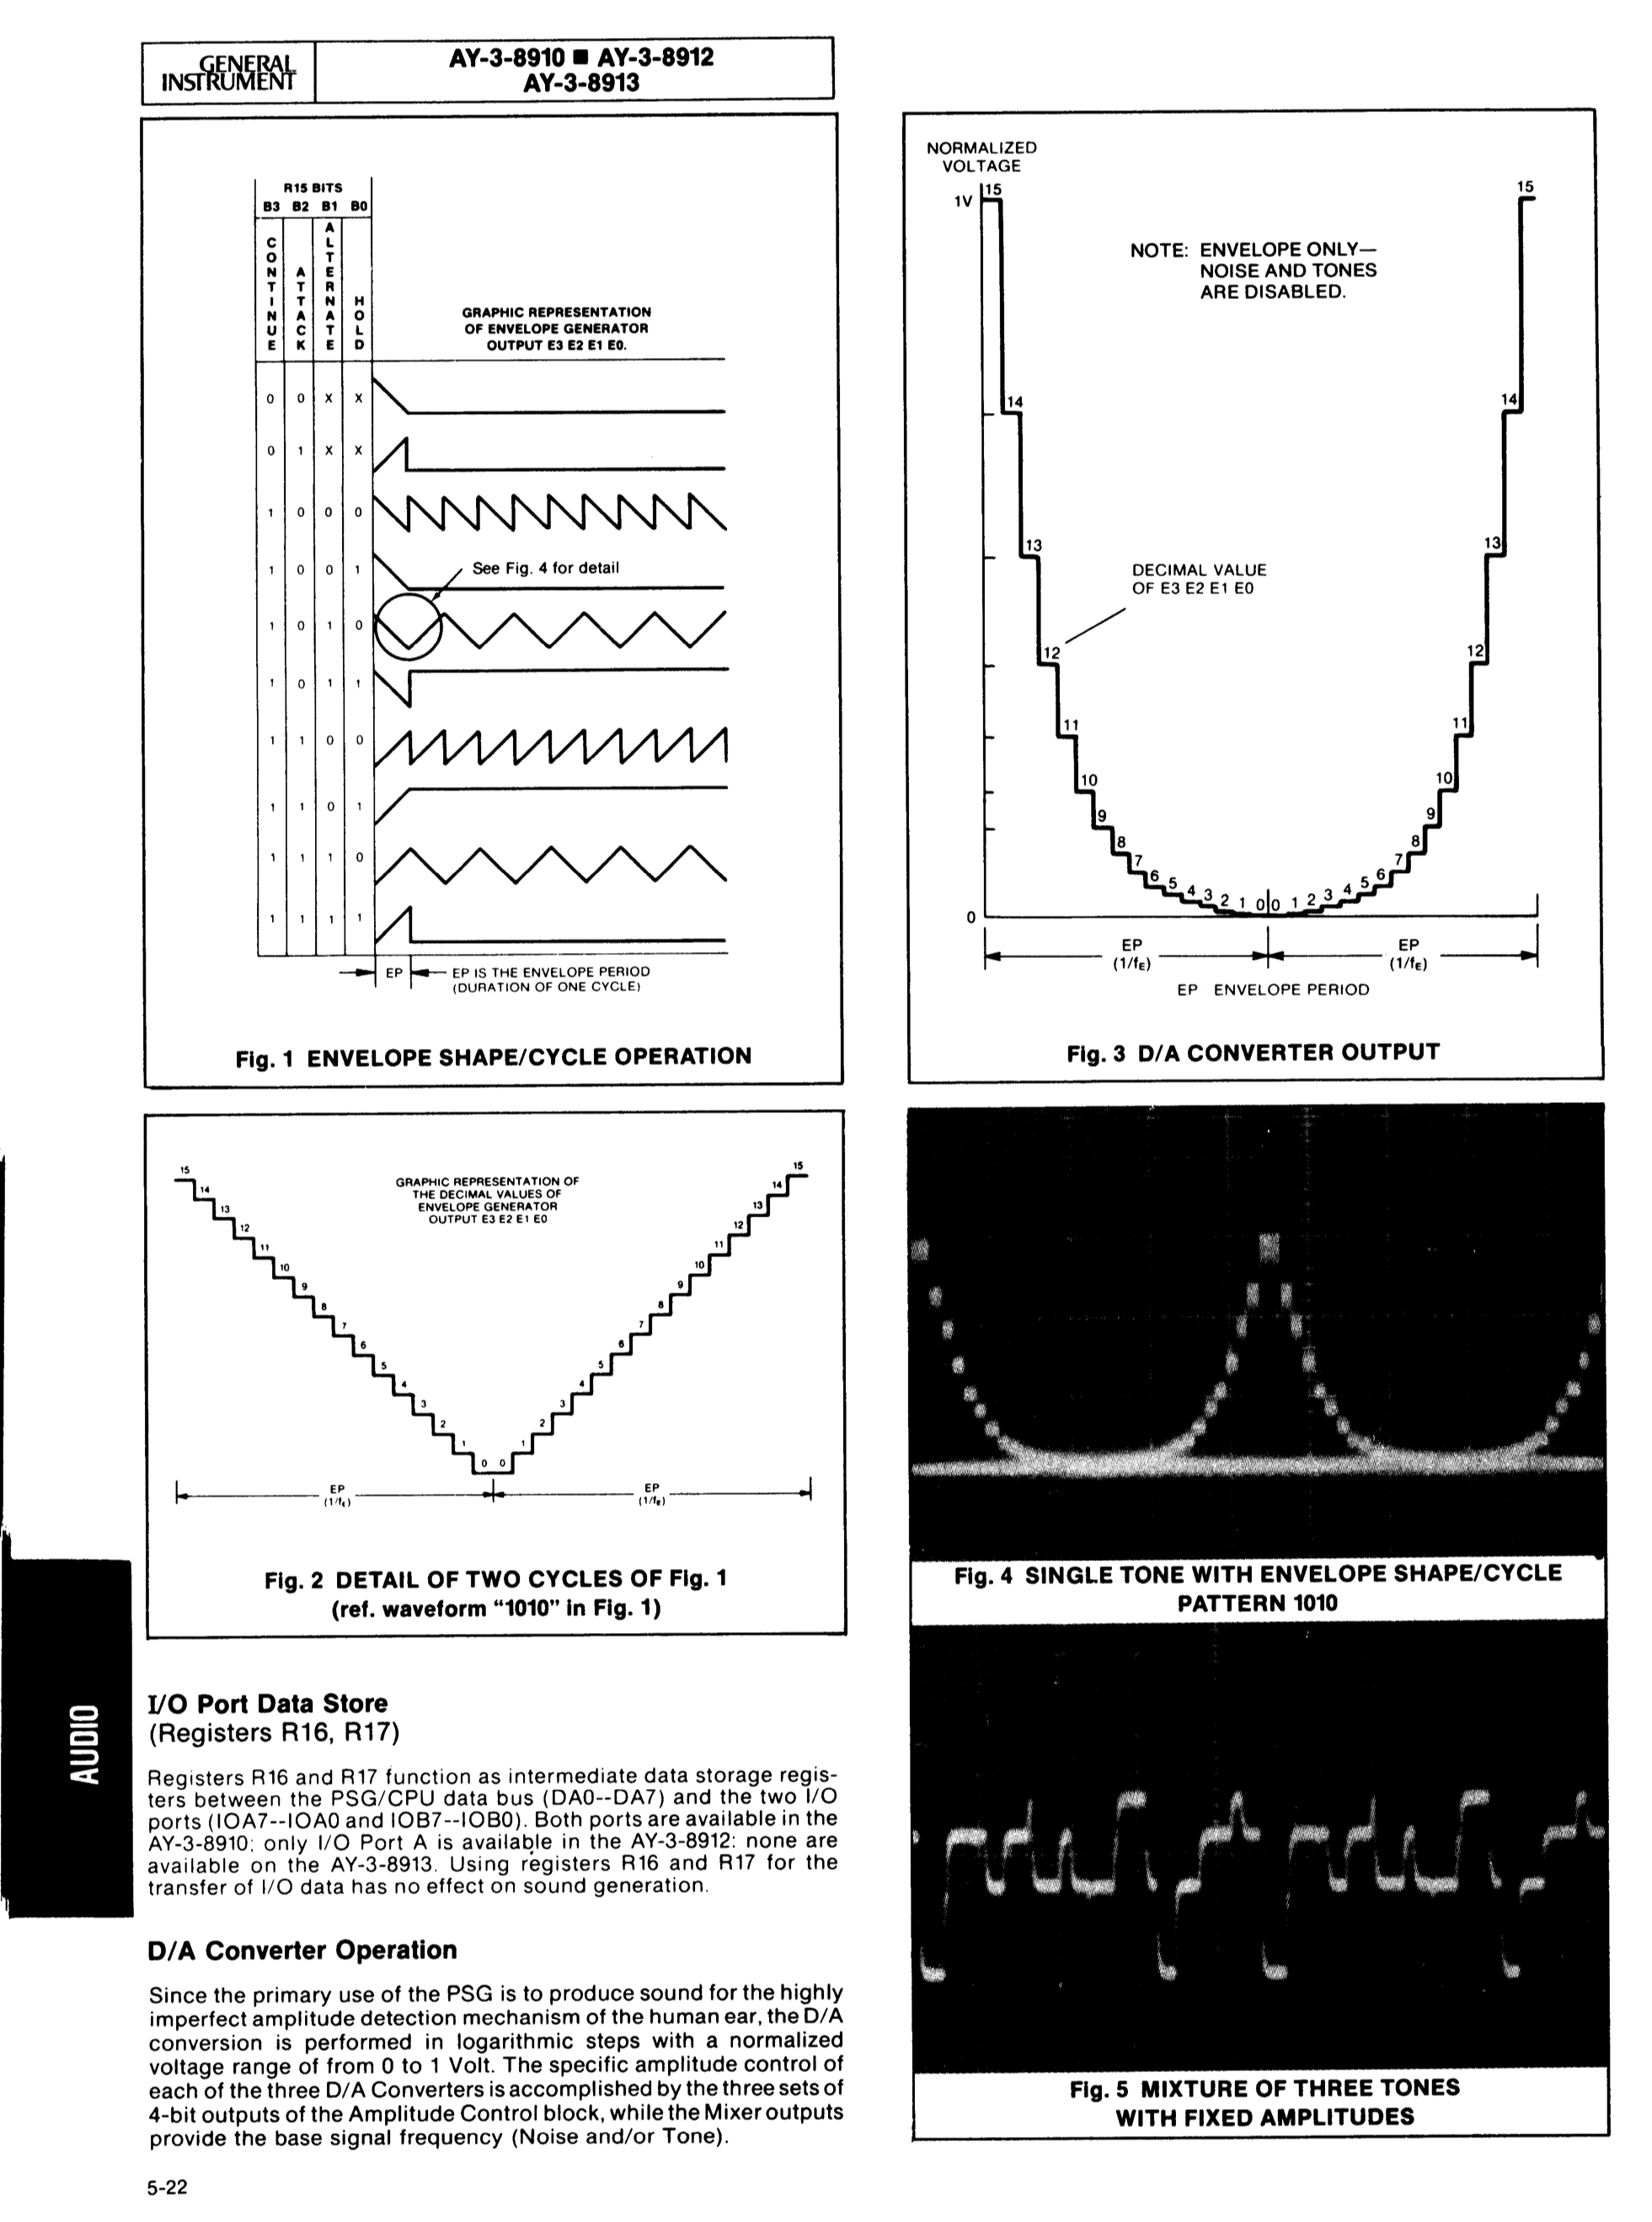 Abb. 2: Seite aus dem Manual des AY-3-8910 [GI 1978:26-31], auf der u.a. die Hüllkurvenfunktionen zu sehen sind (oben links).